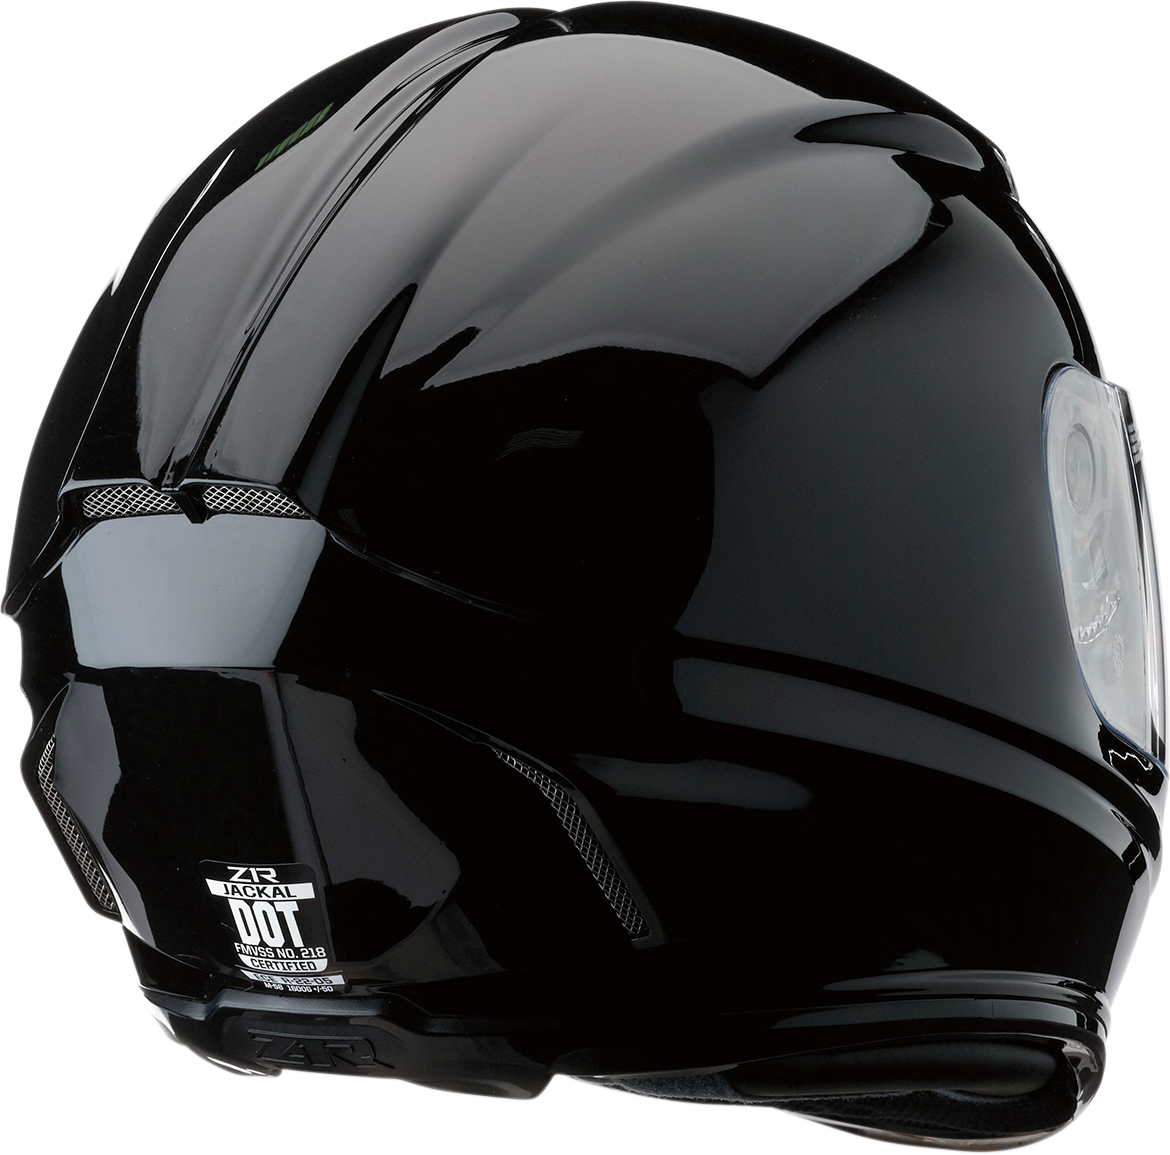 Z1R Jackal Helmet - Black - XL 0101-10795